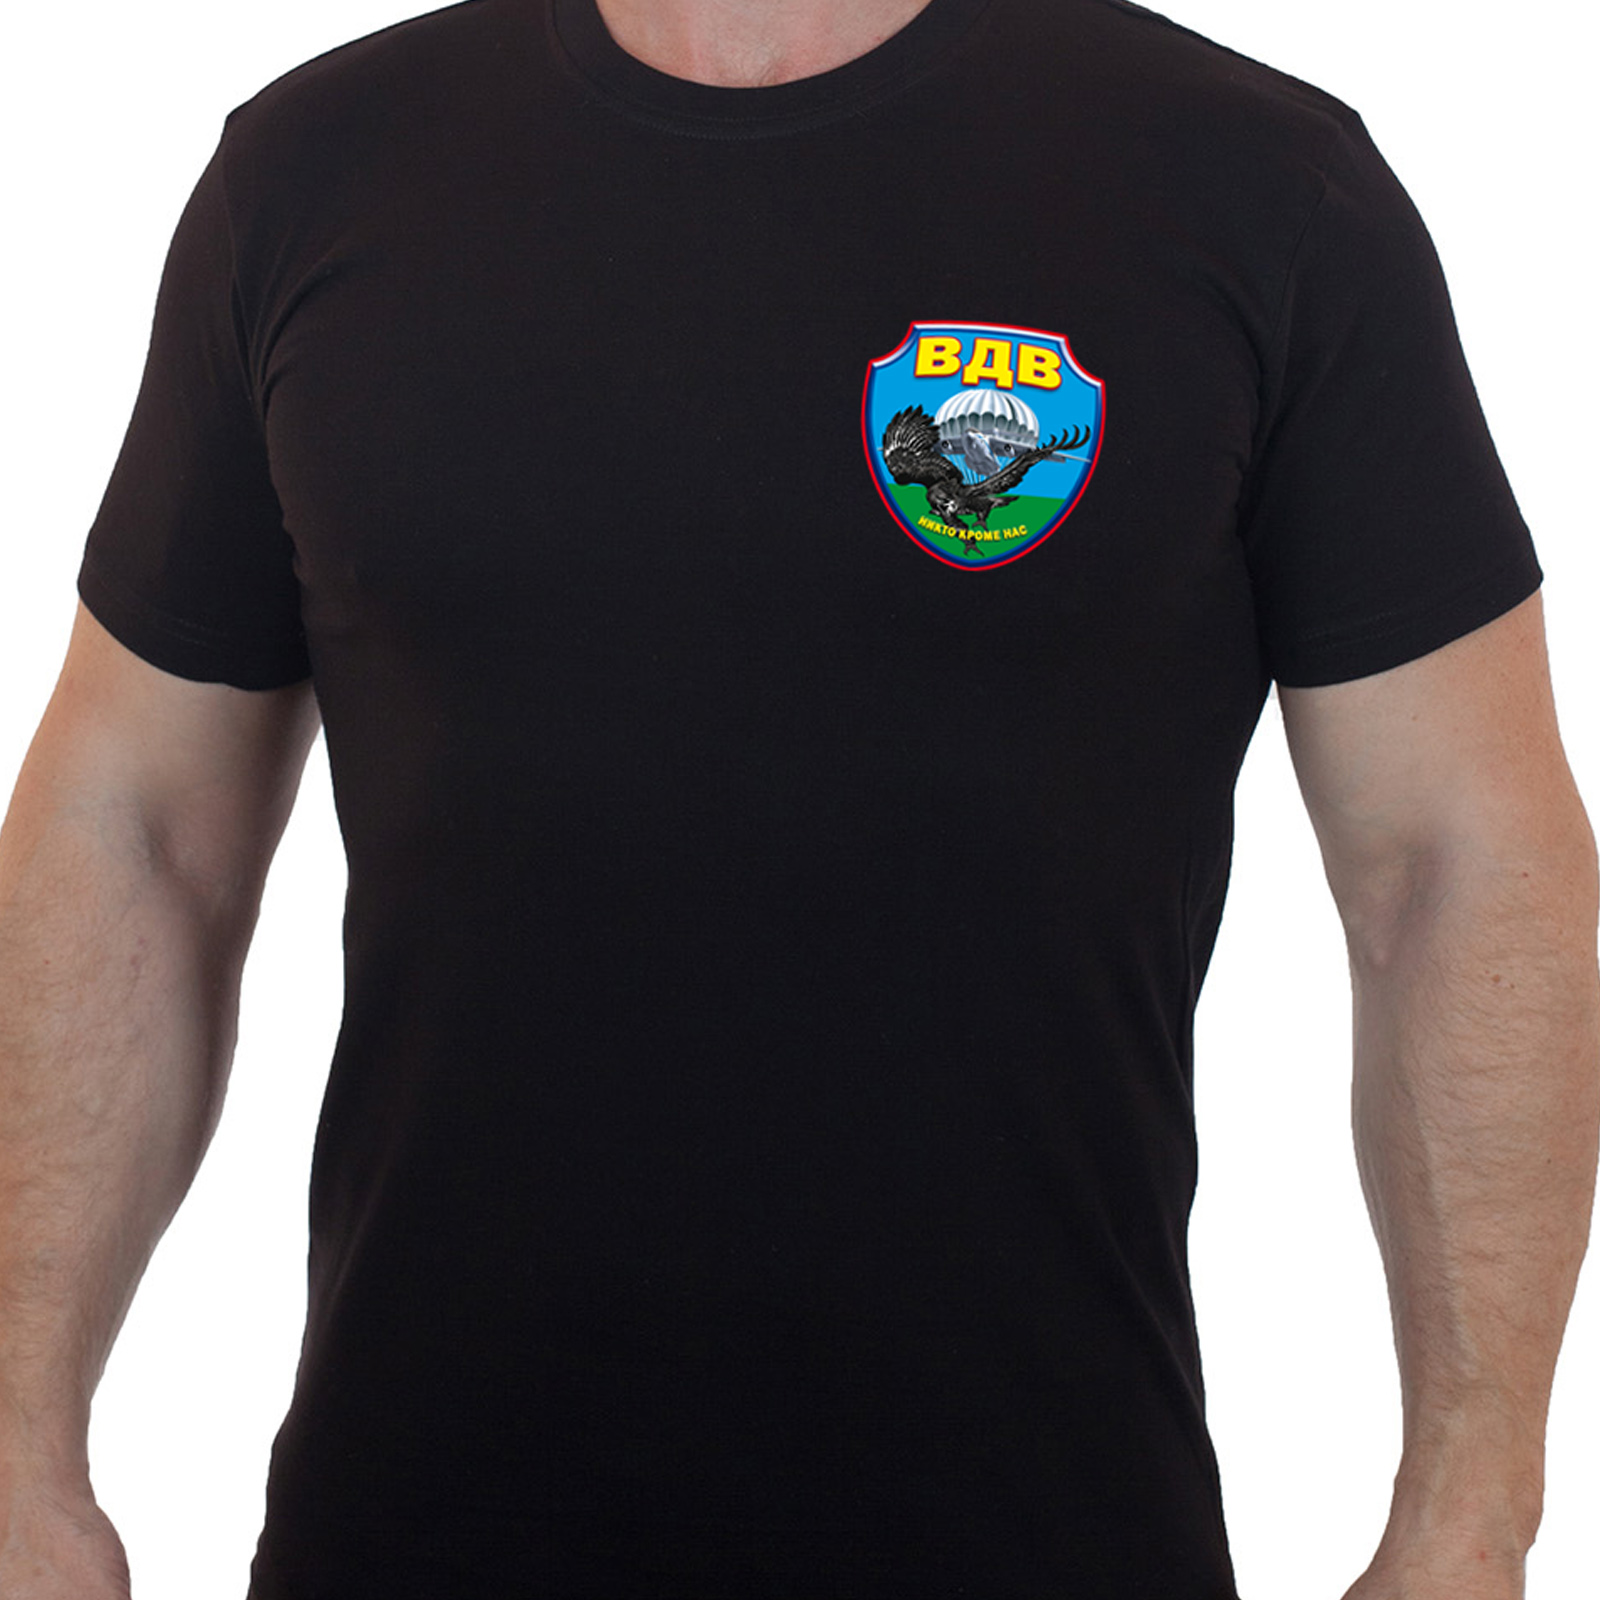 Чёрная футболка с термоаппликацией ВДВ